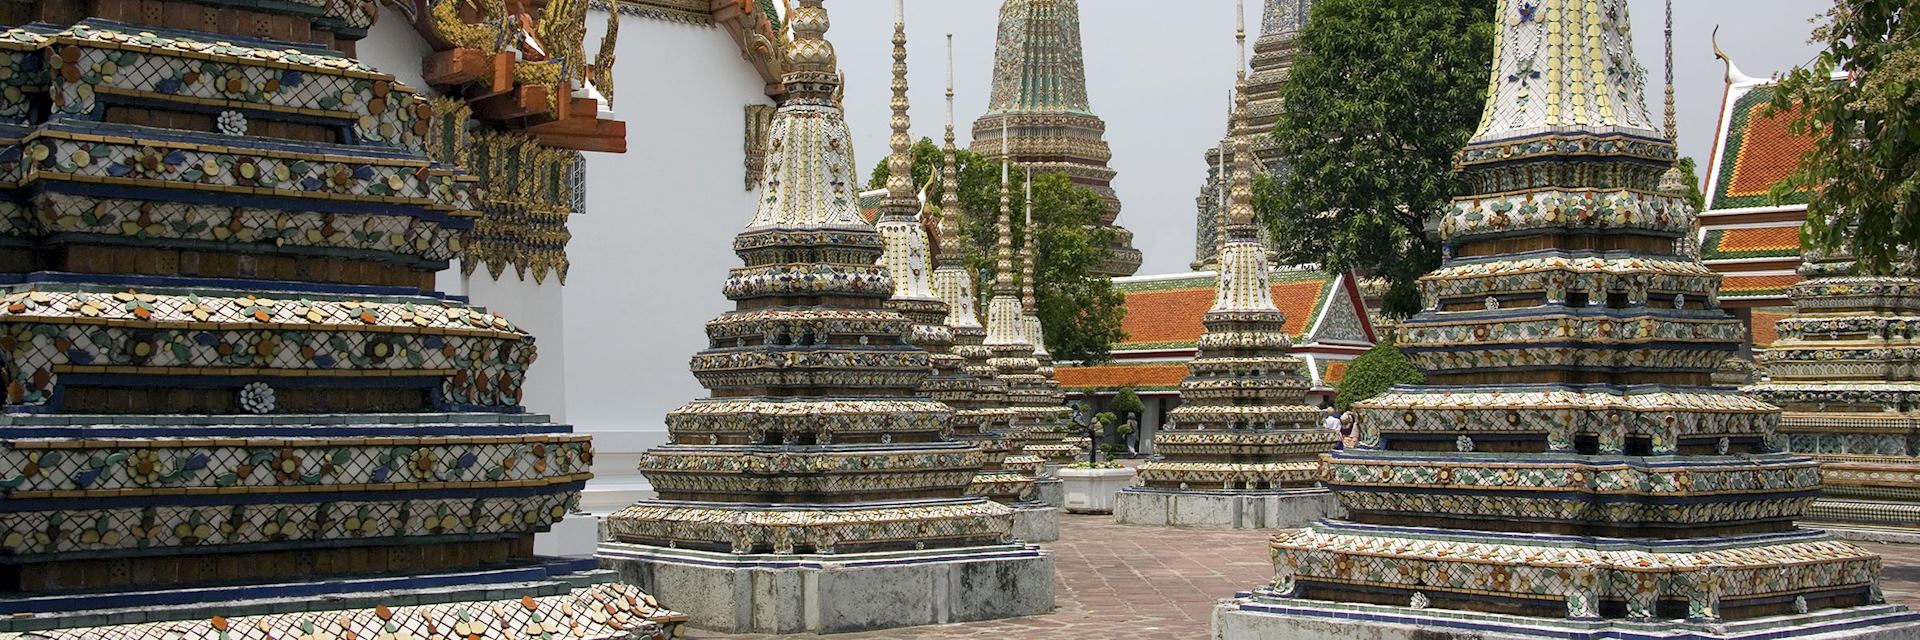 Wat Po, Bangkok